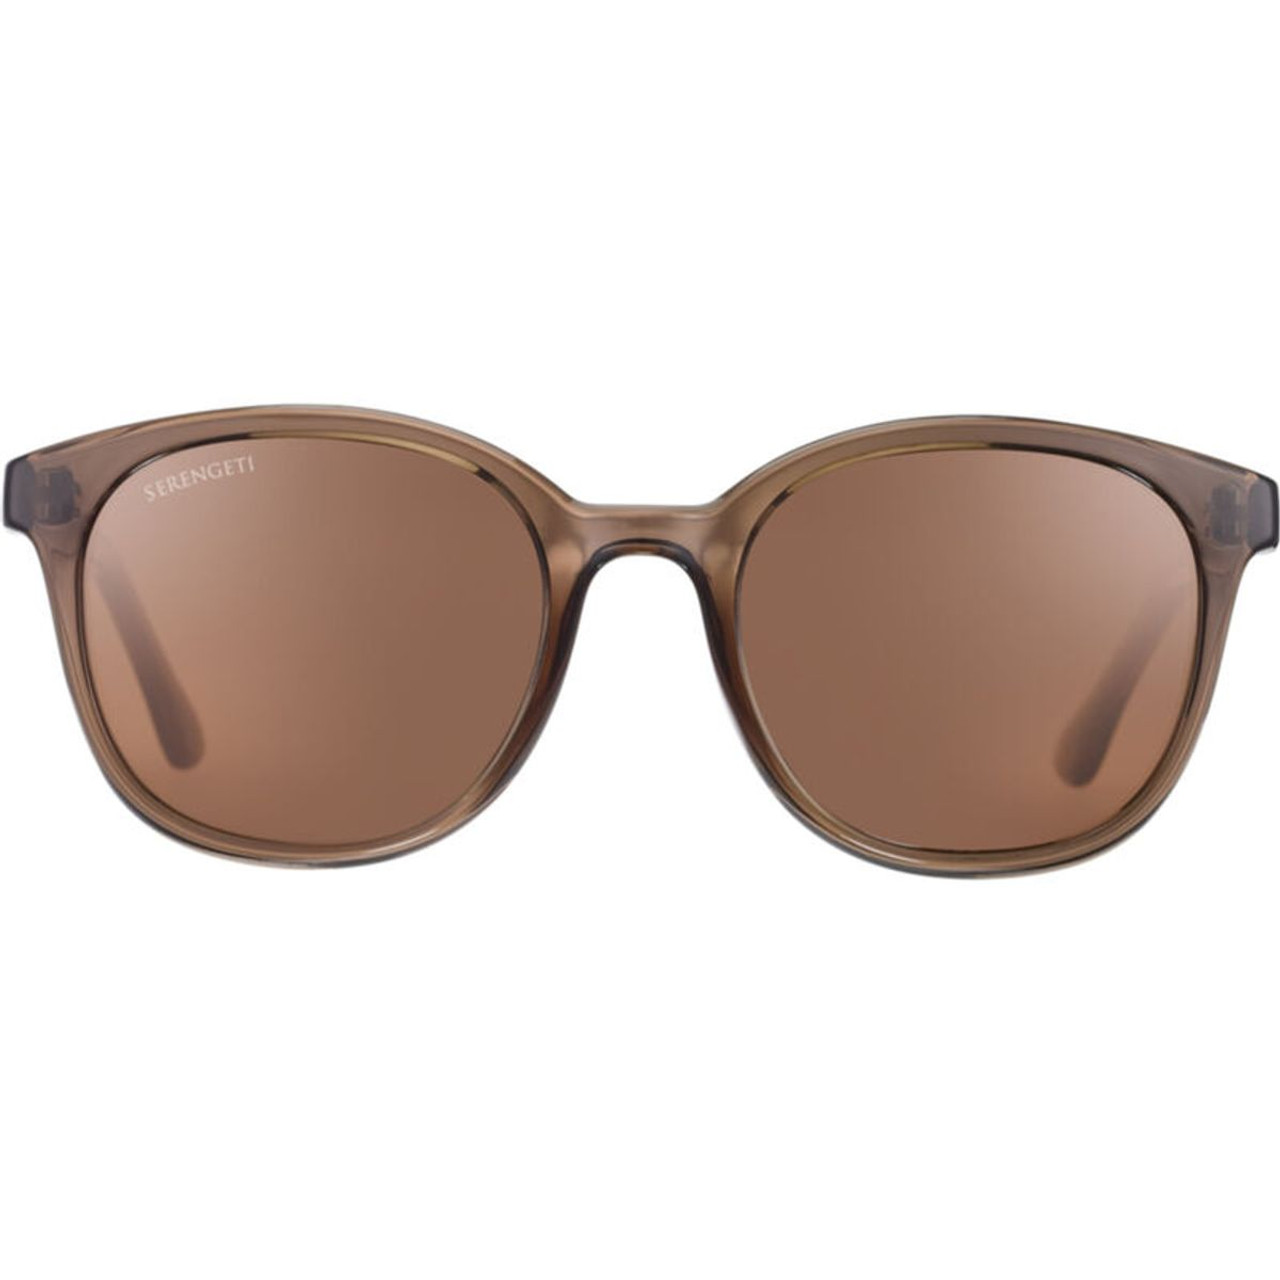 Serengeti® MARA Women's Sunglasses product image